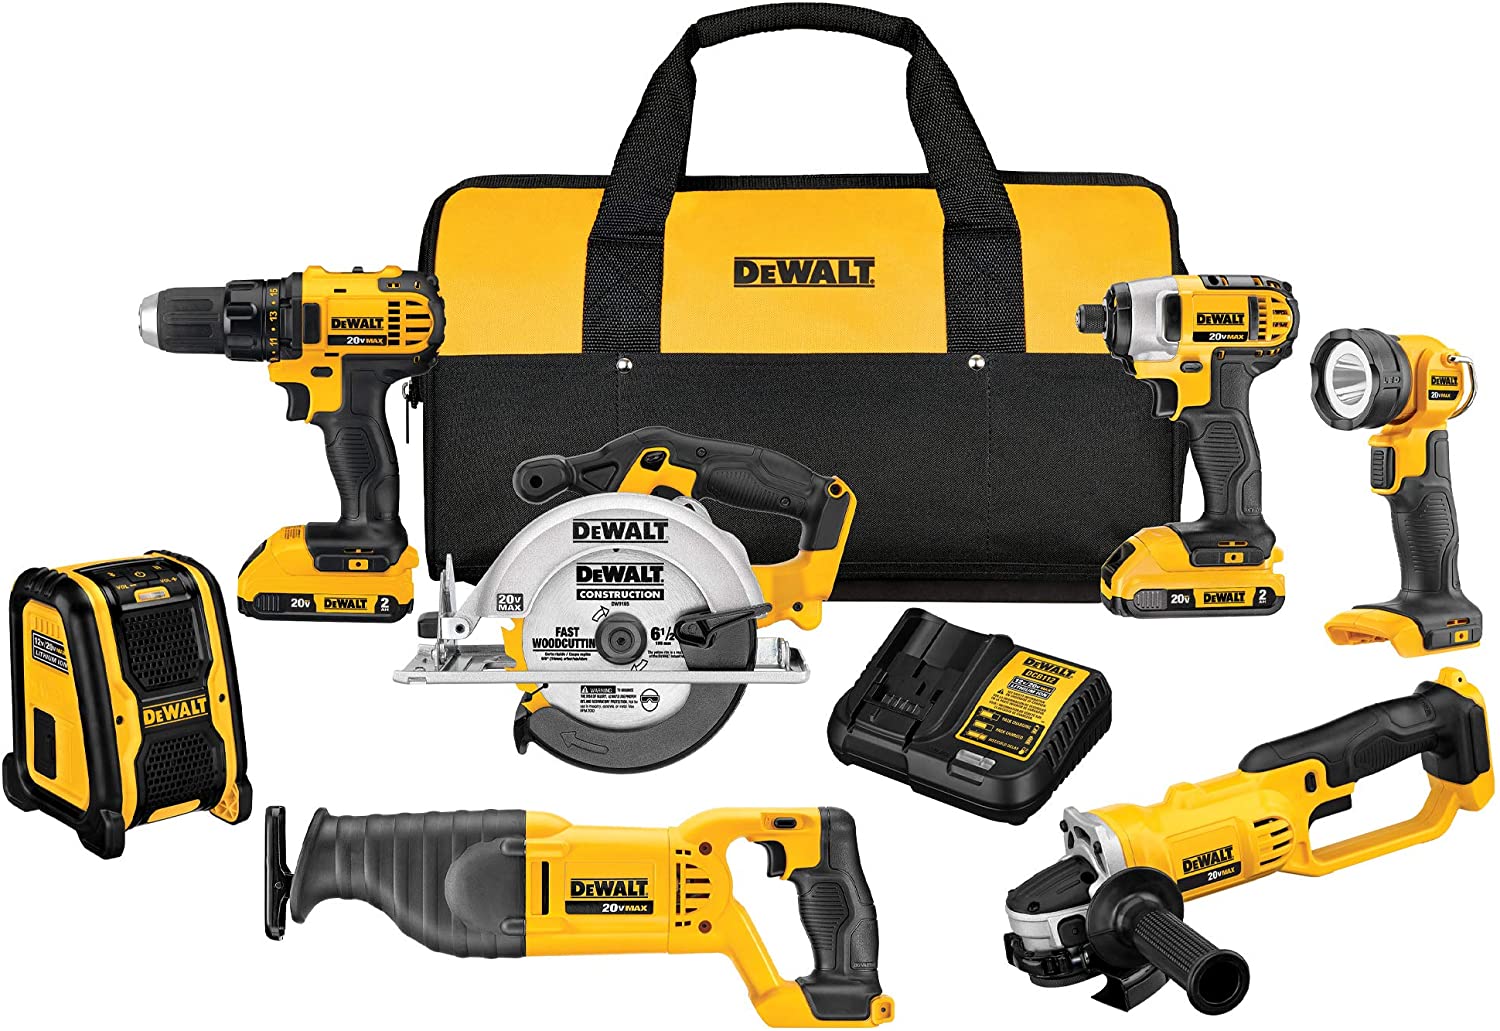 dewalt tool kit